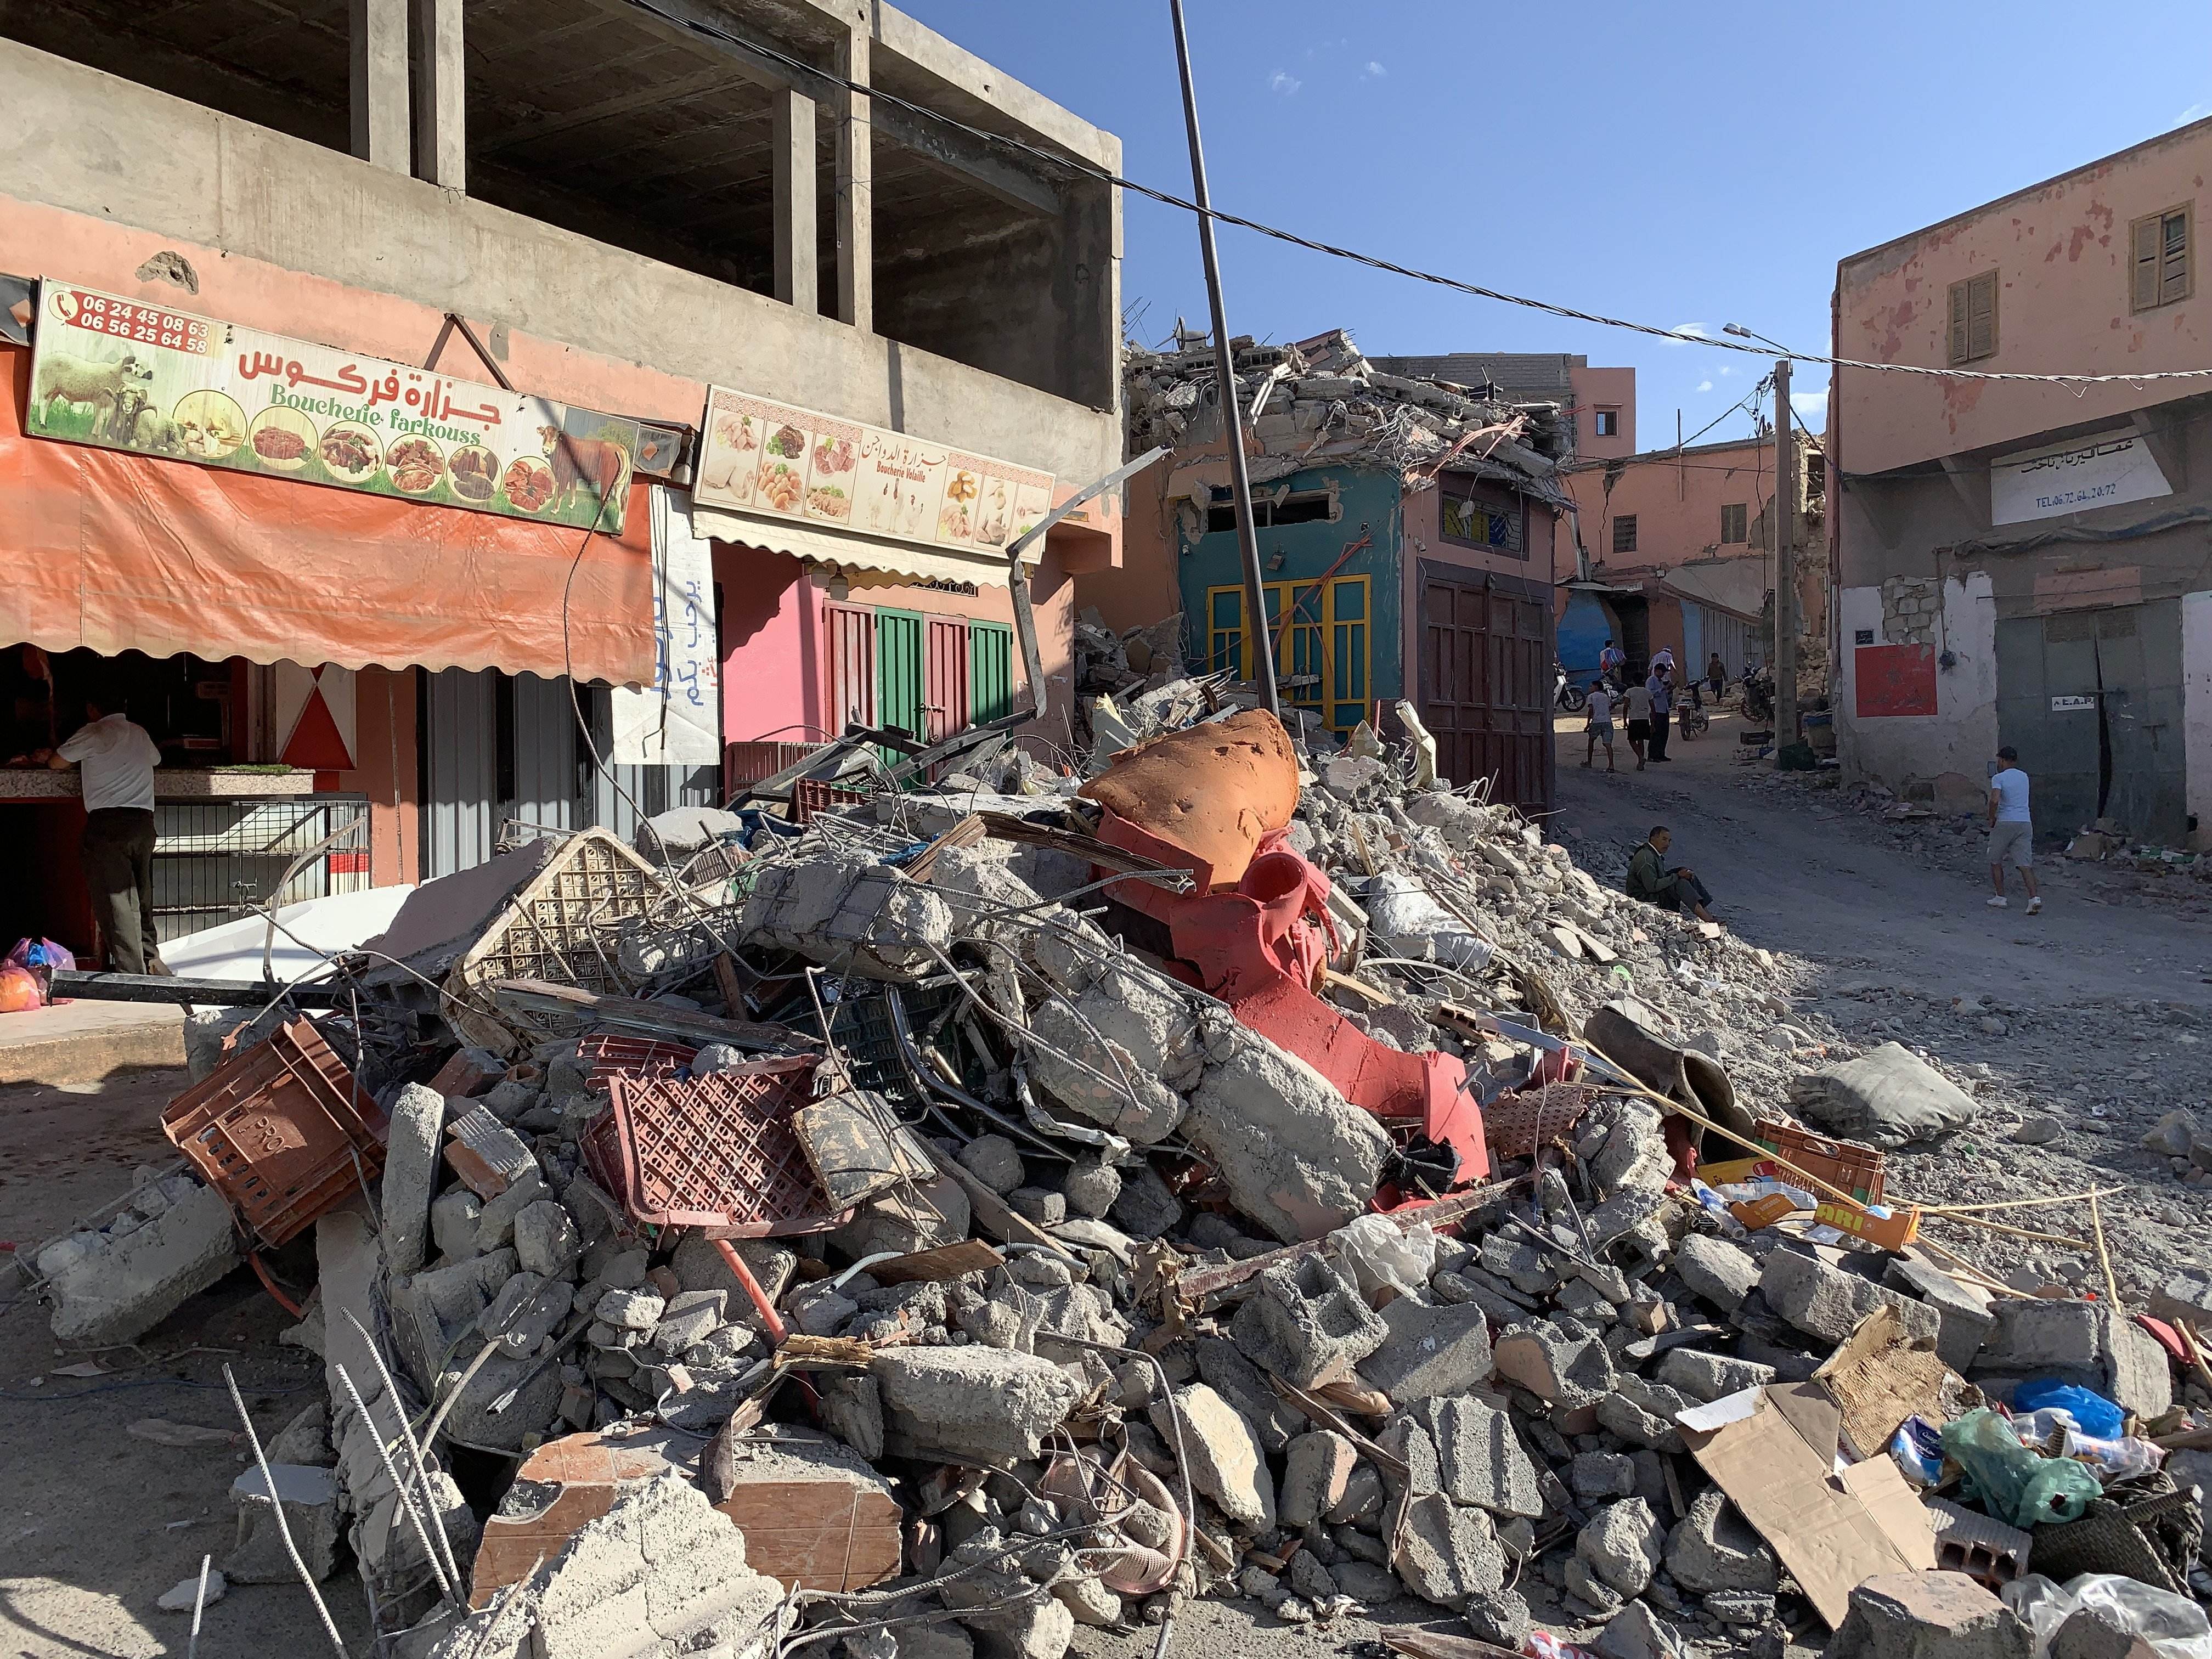 Amizmiz: rescats, oració i plors al cor del terratrèmol del Marroc